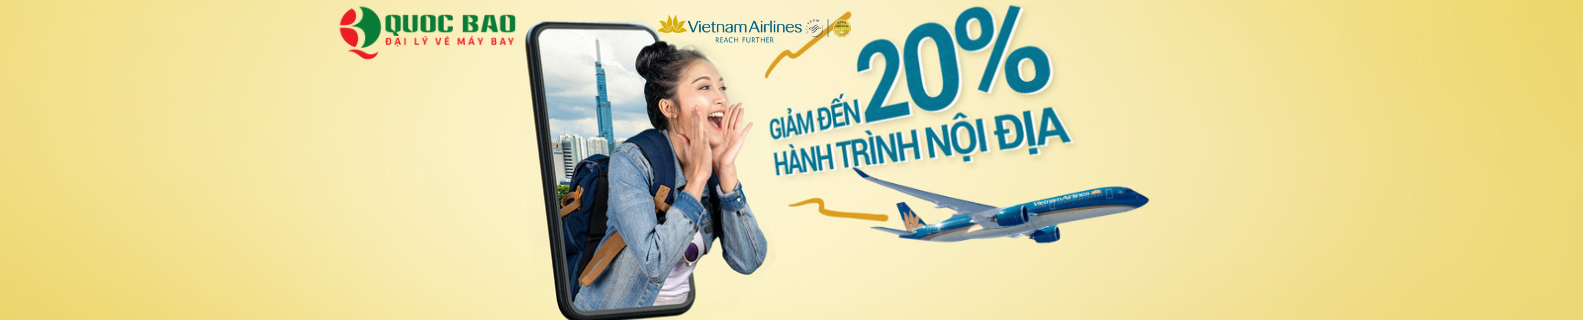 Vé máy bay Hà Nội đi Nha Trang